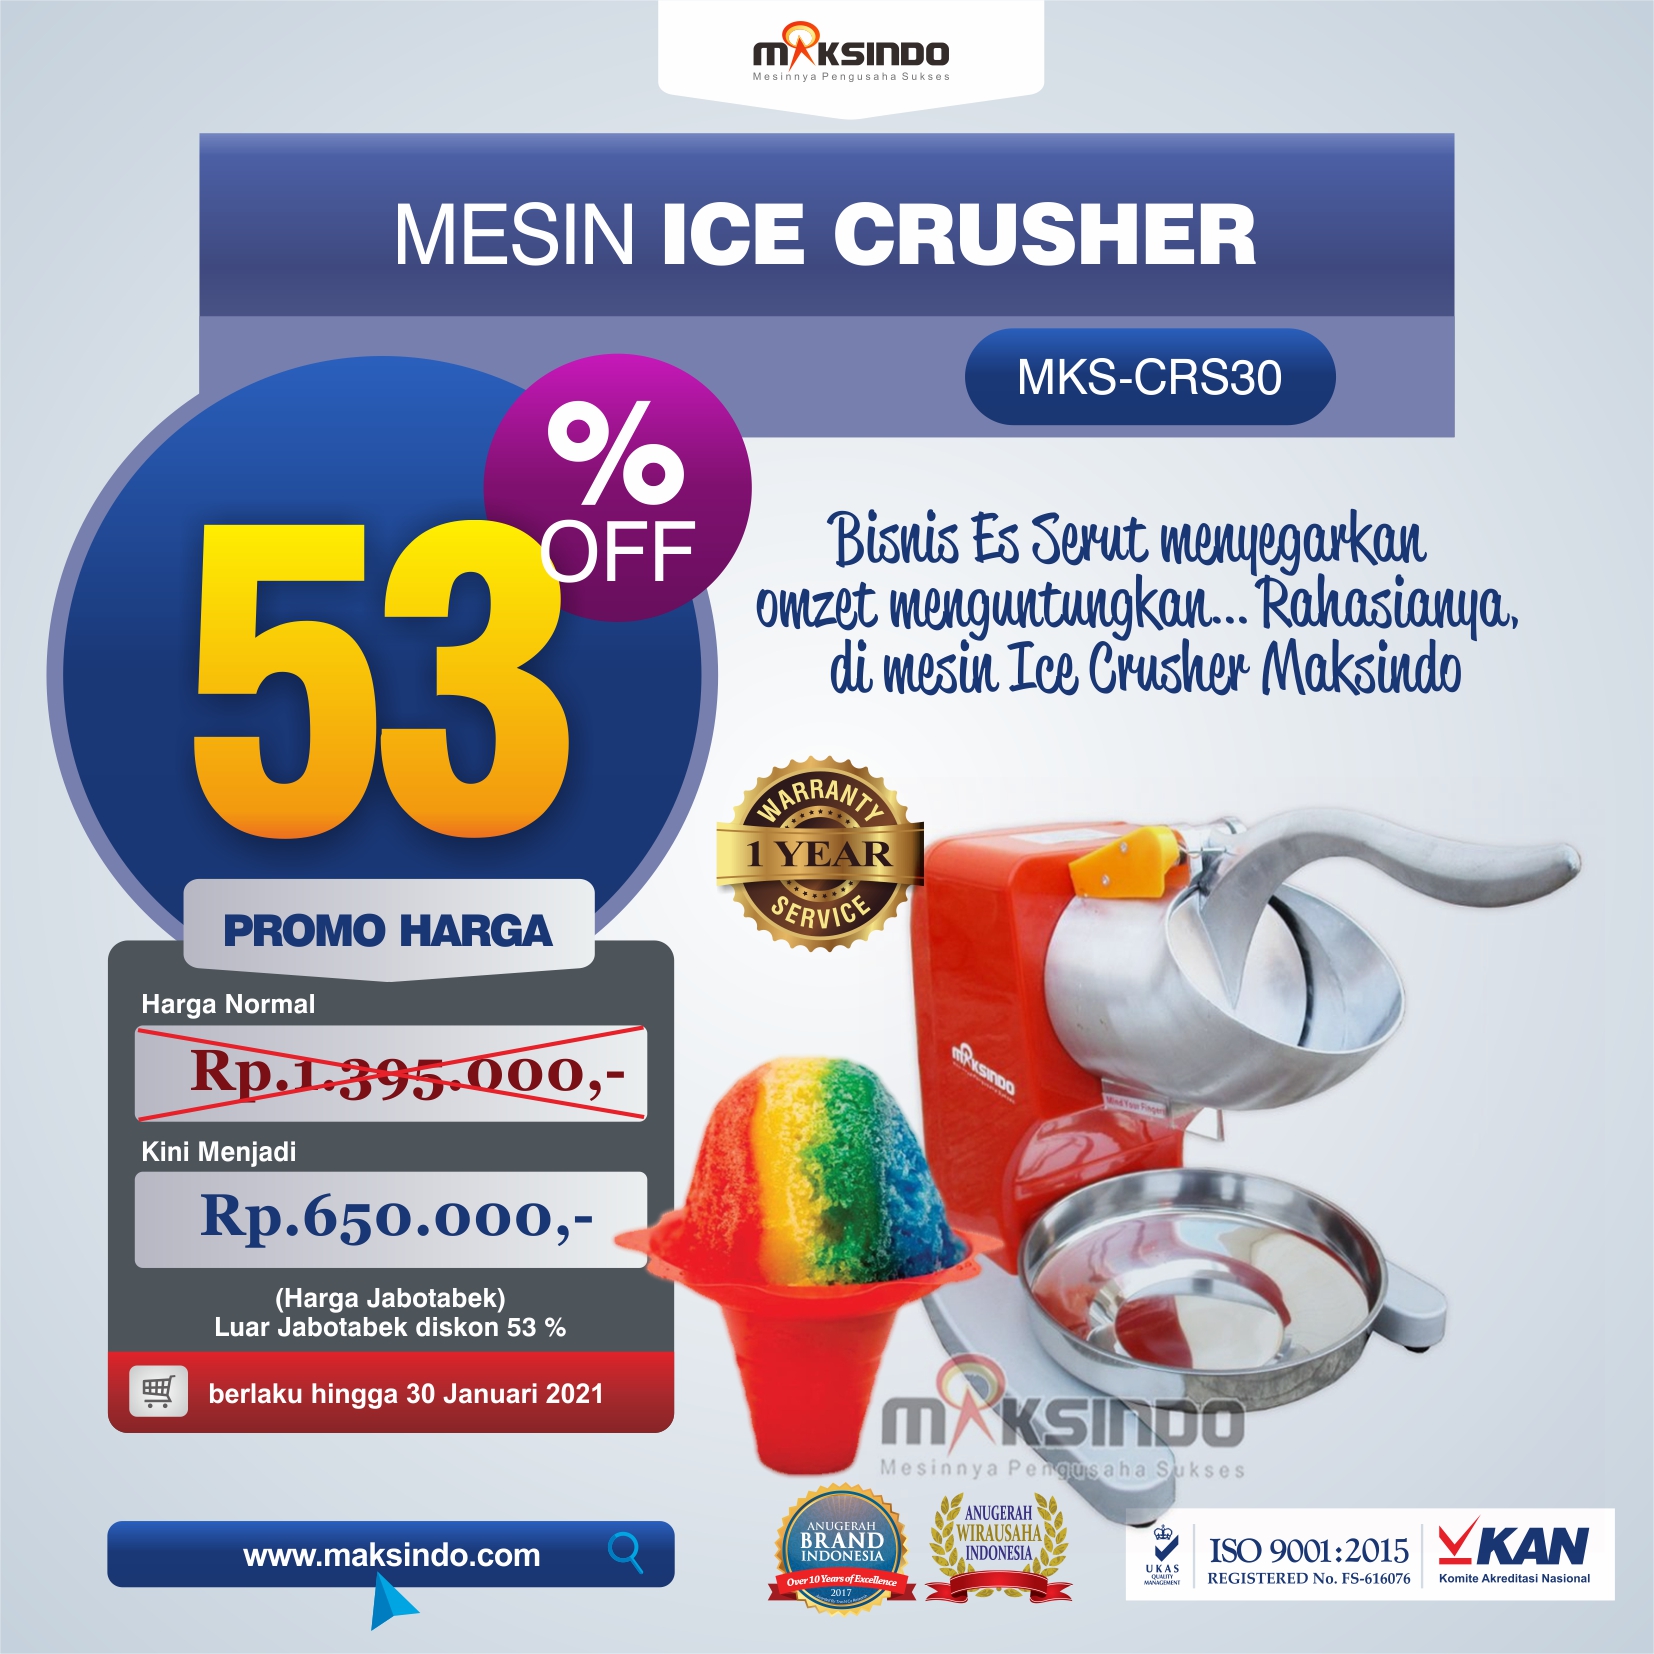 Jual Mesin Ice Crusher MKS-CRS30 Di Semarang